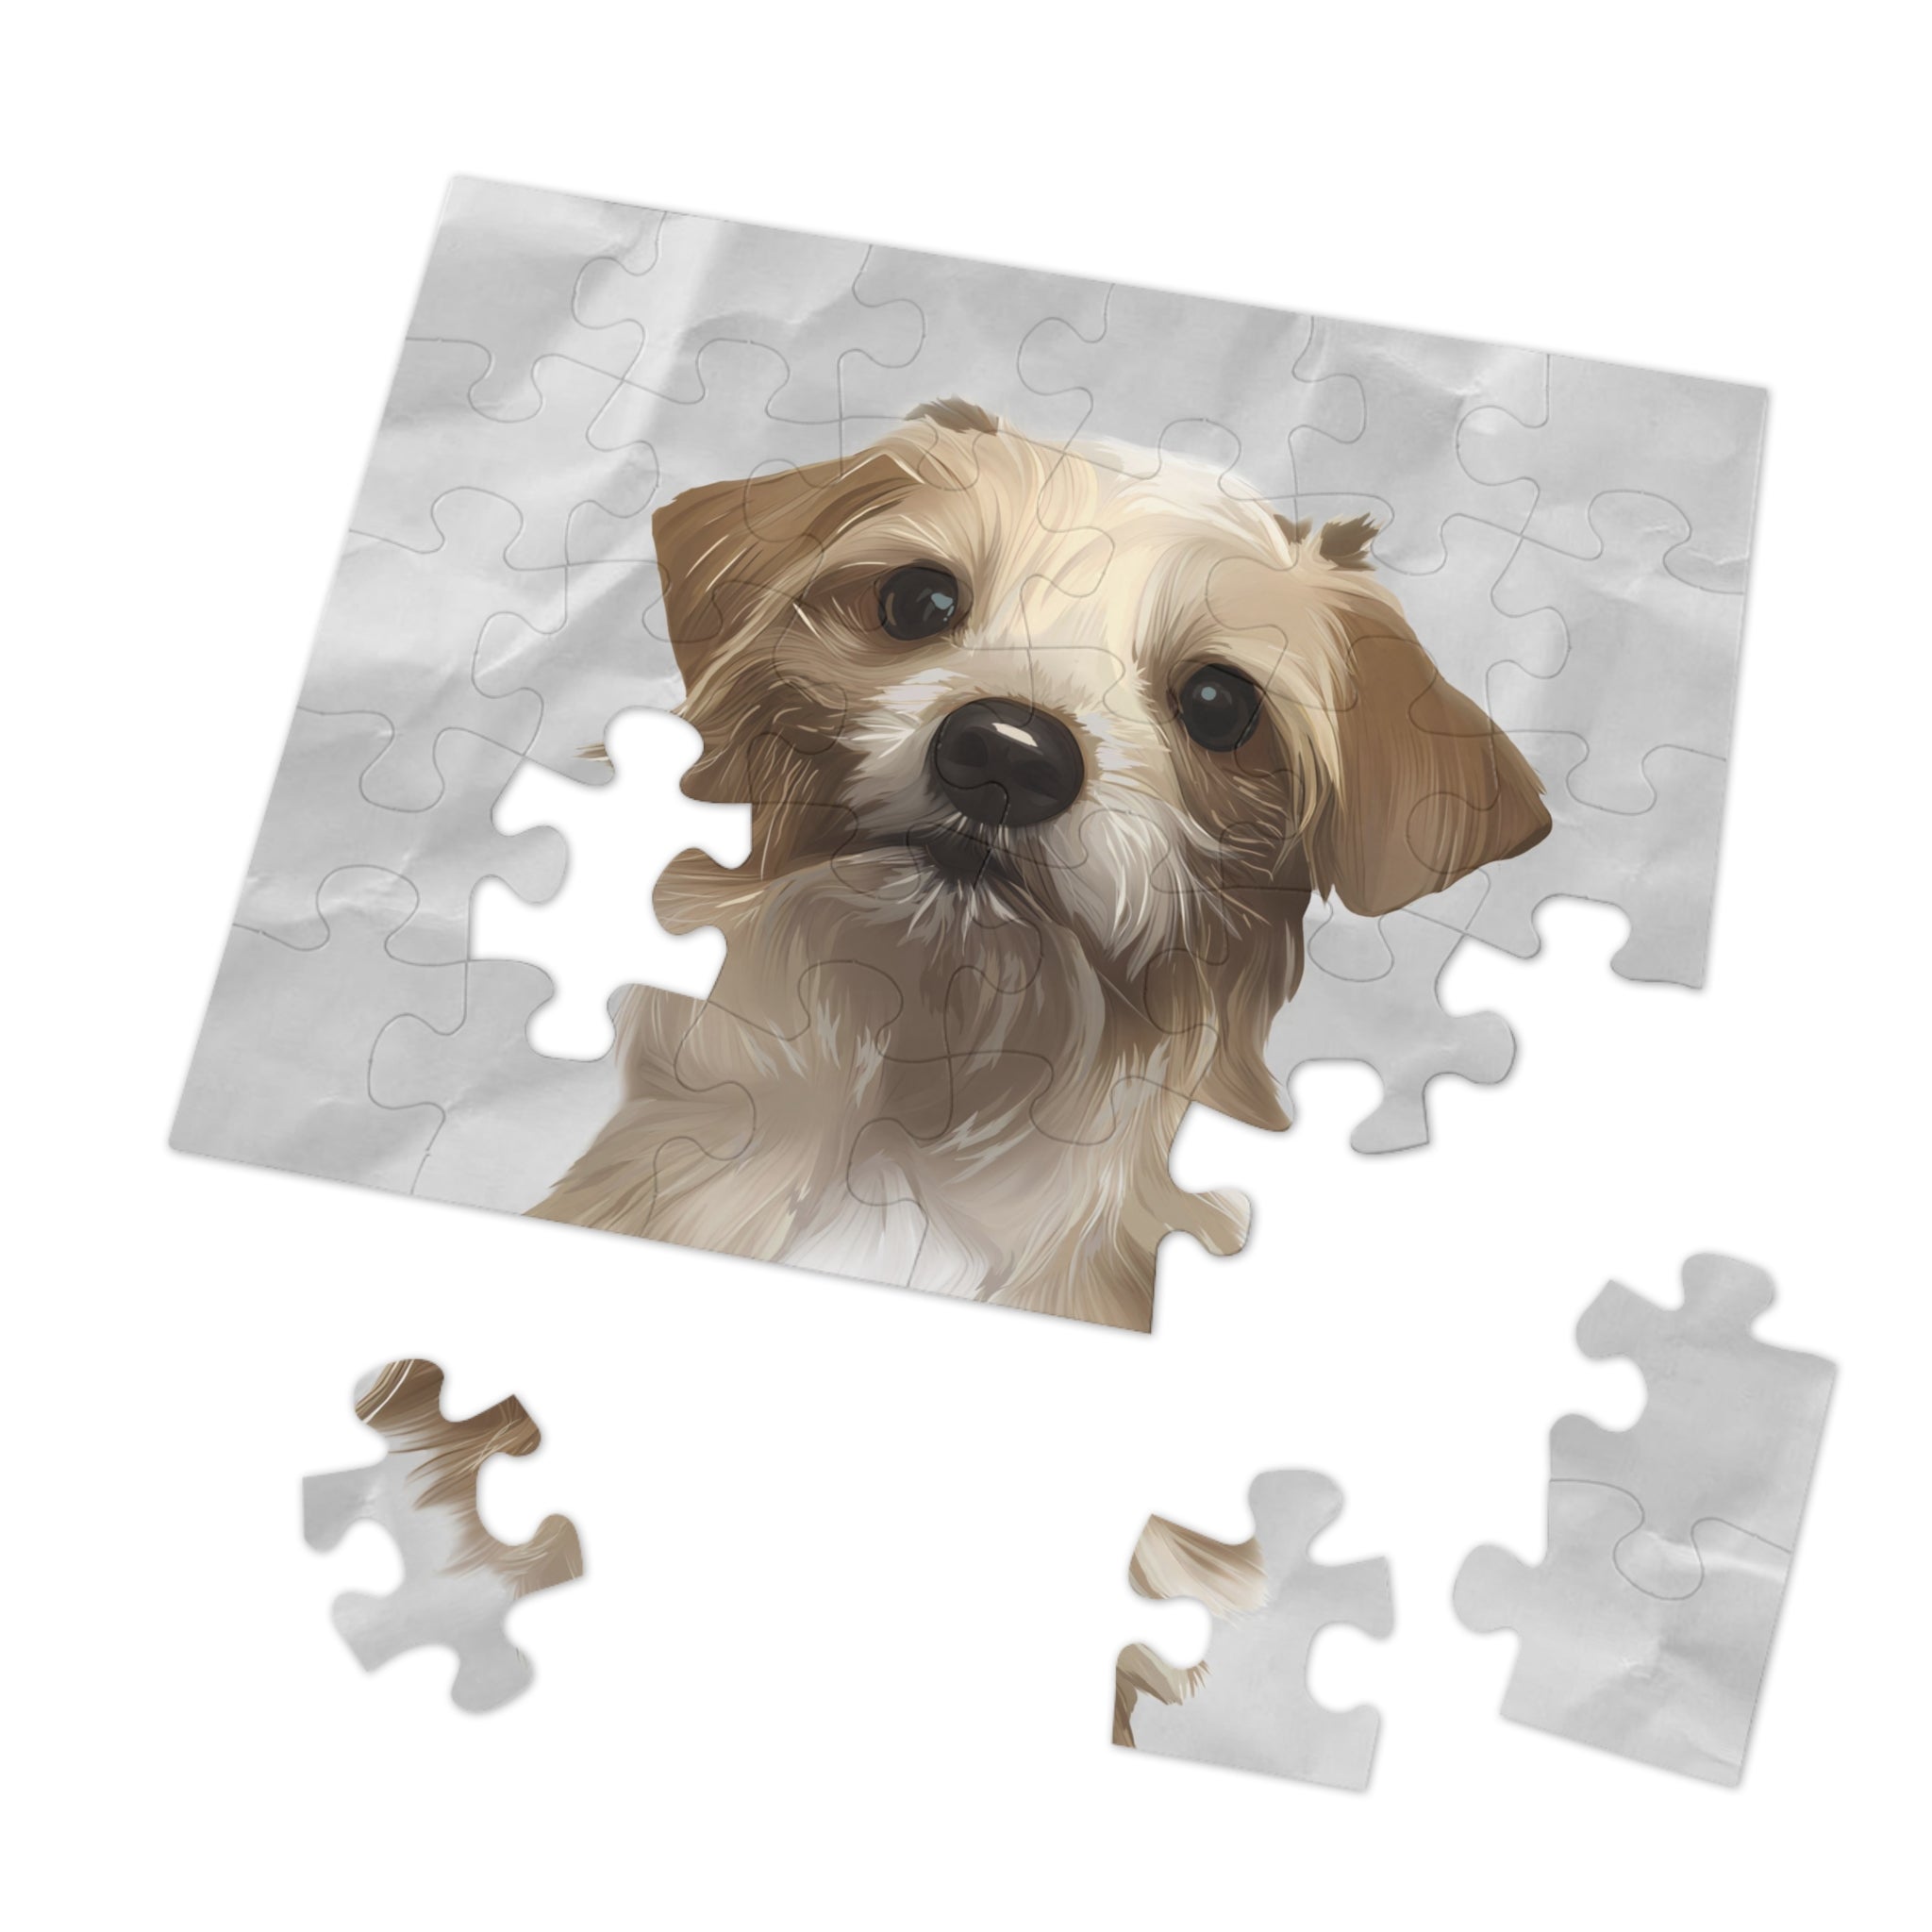 Dog Portrait Jigsaw Puzzle (30, 110, 252, 500,1000-Piece) | Crumpled Paper - custom-dog-portrait-jigsaw-puzzle-30-110-252-500-1000-crumpled-paper